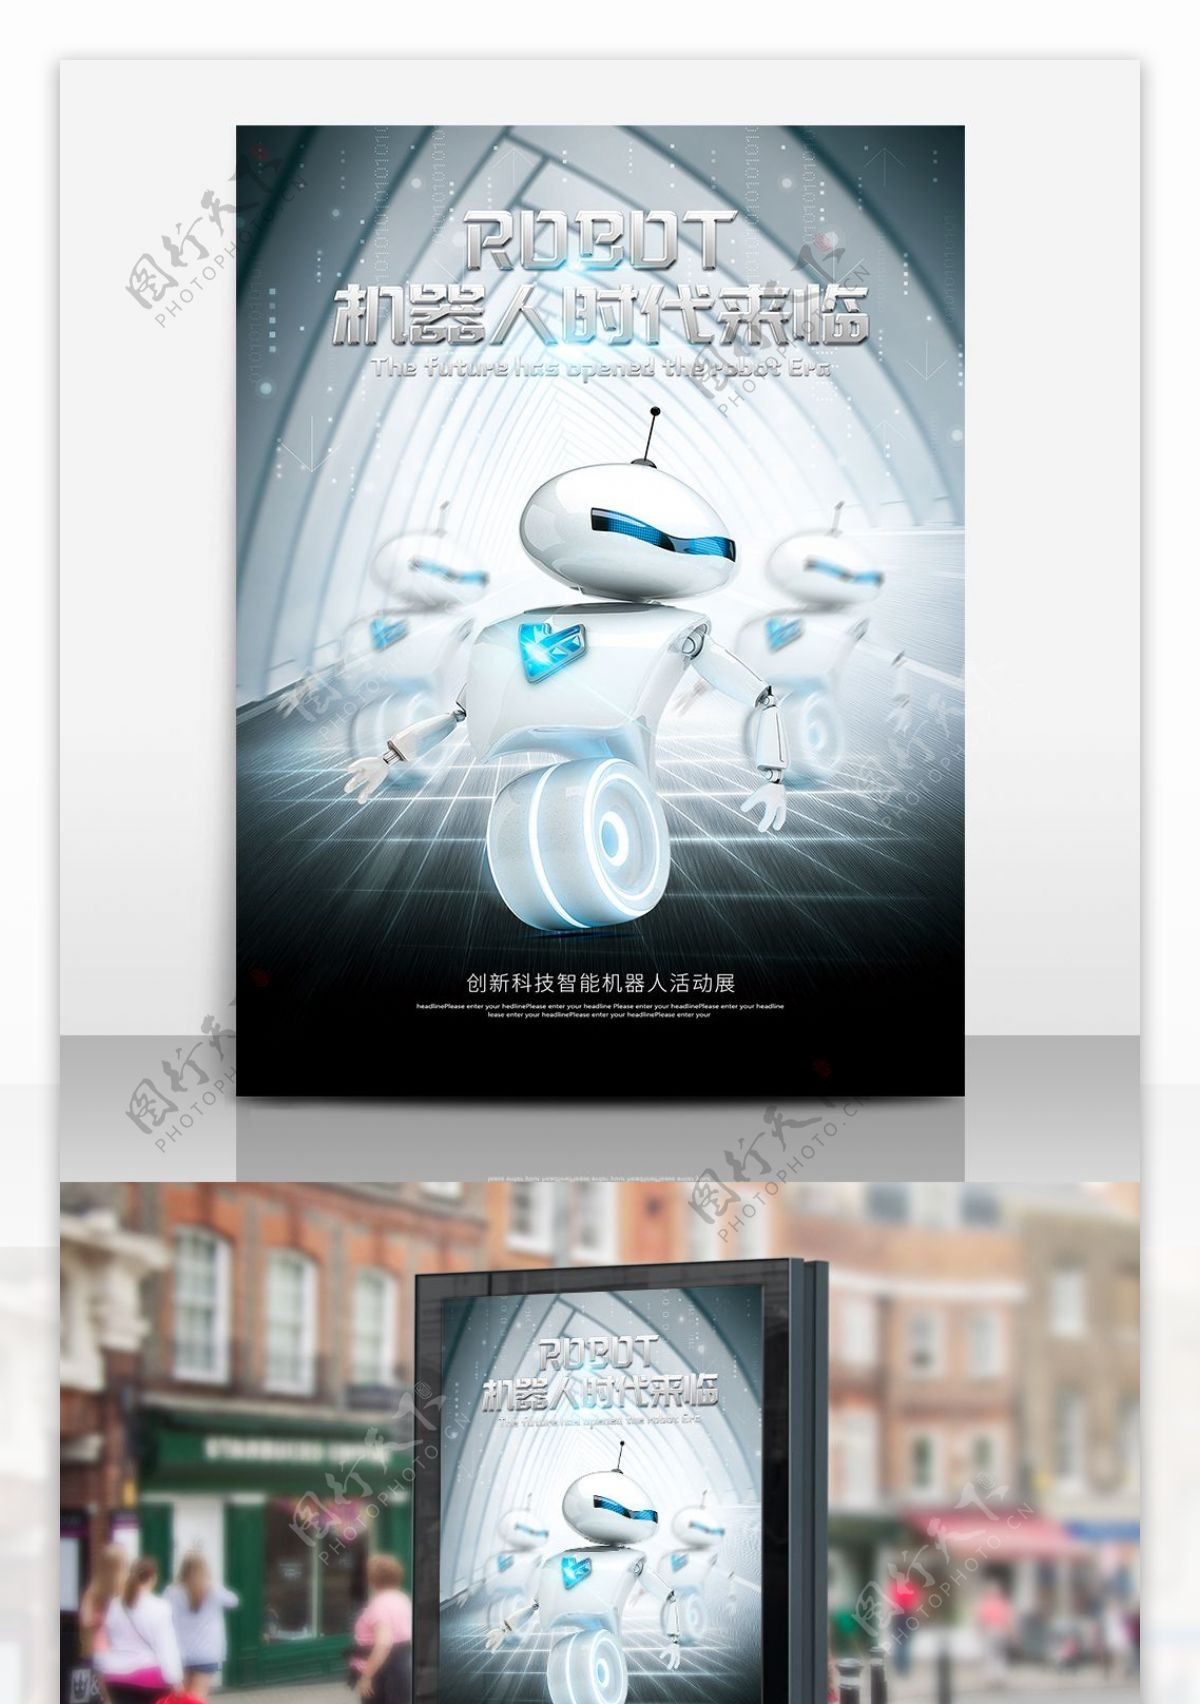 创意机器人科技展宣传海报设计